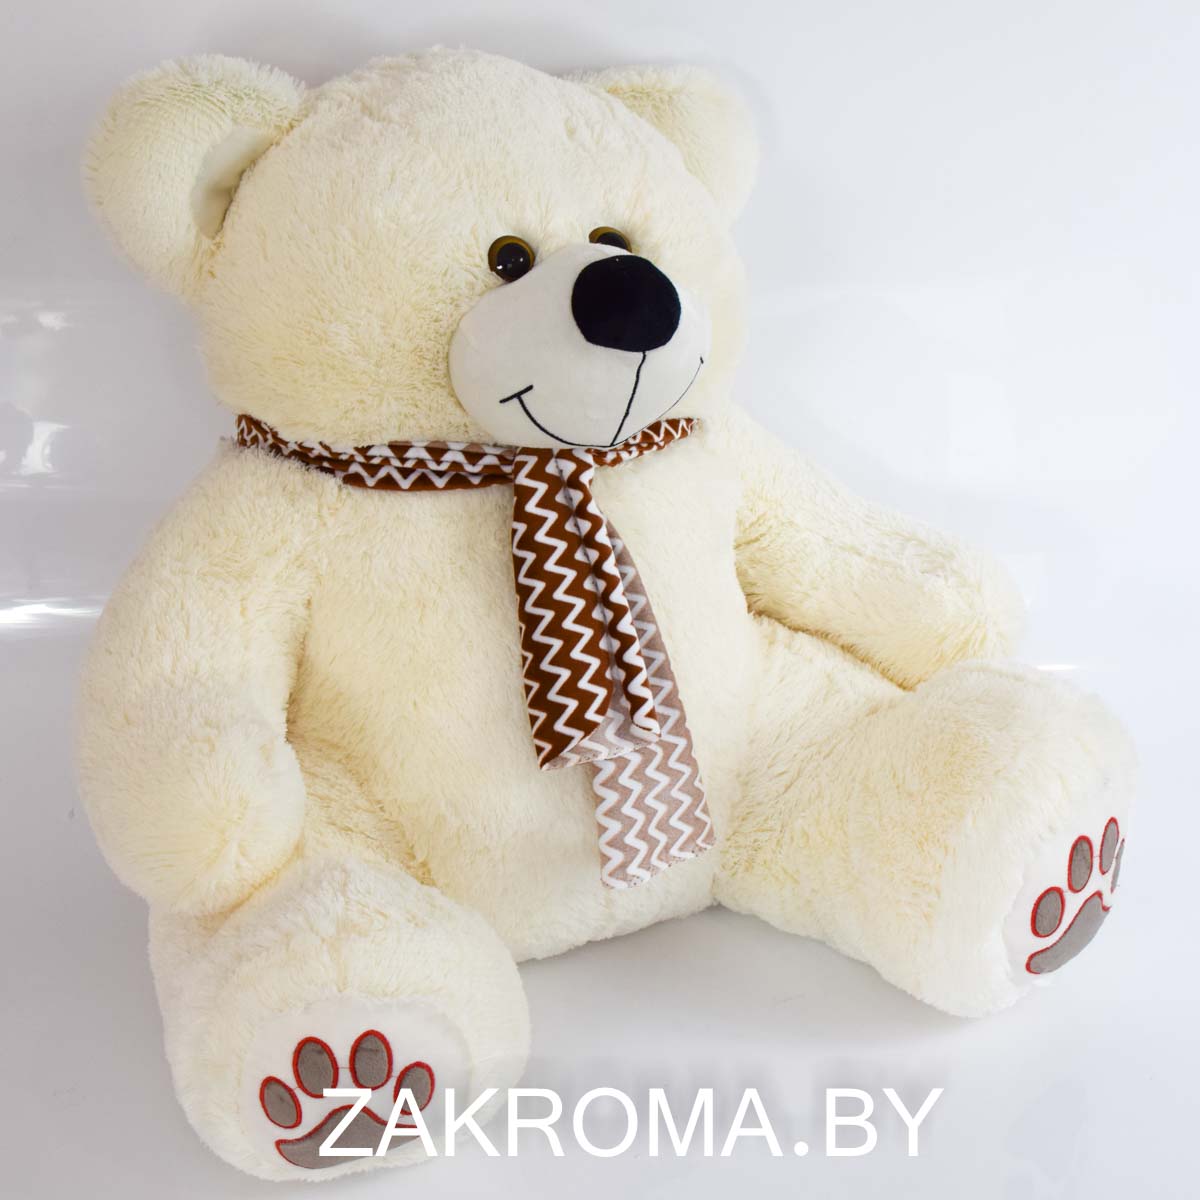 Мишка плюшевый мягкий медведь Добряк с шарфом 120 см. Мягкая игрушка медведь. Цвет светлый латте.